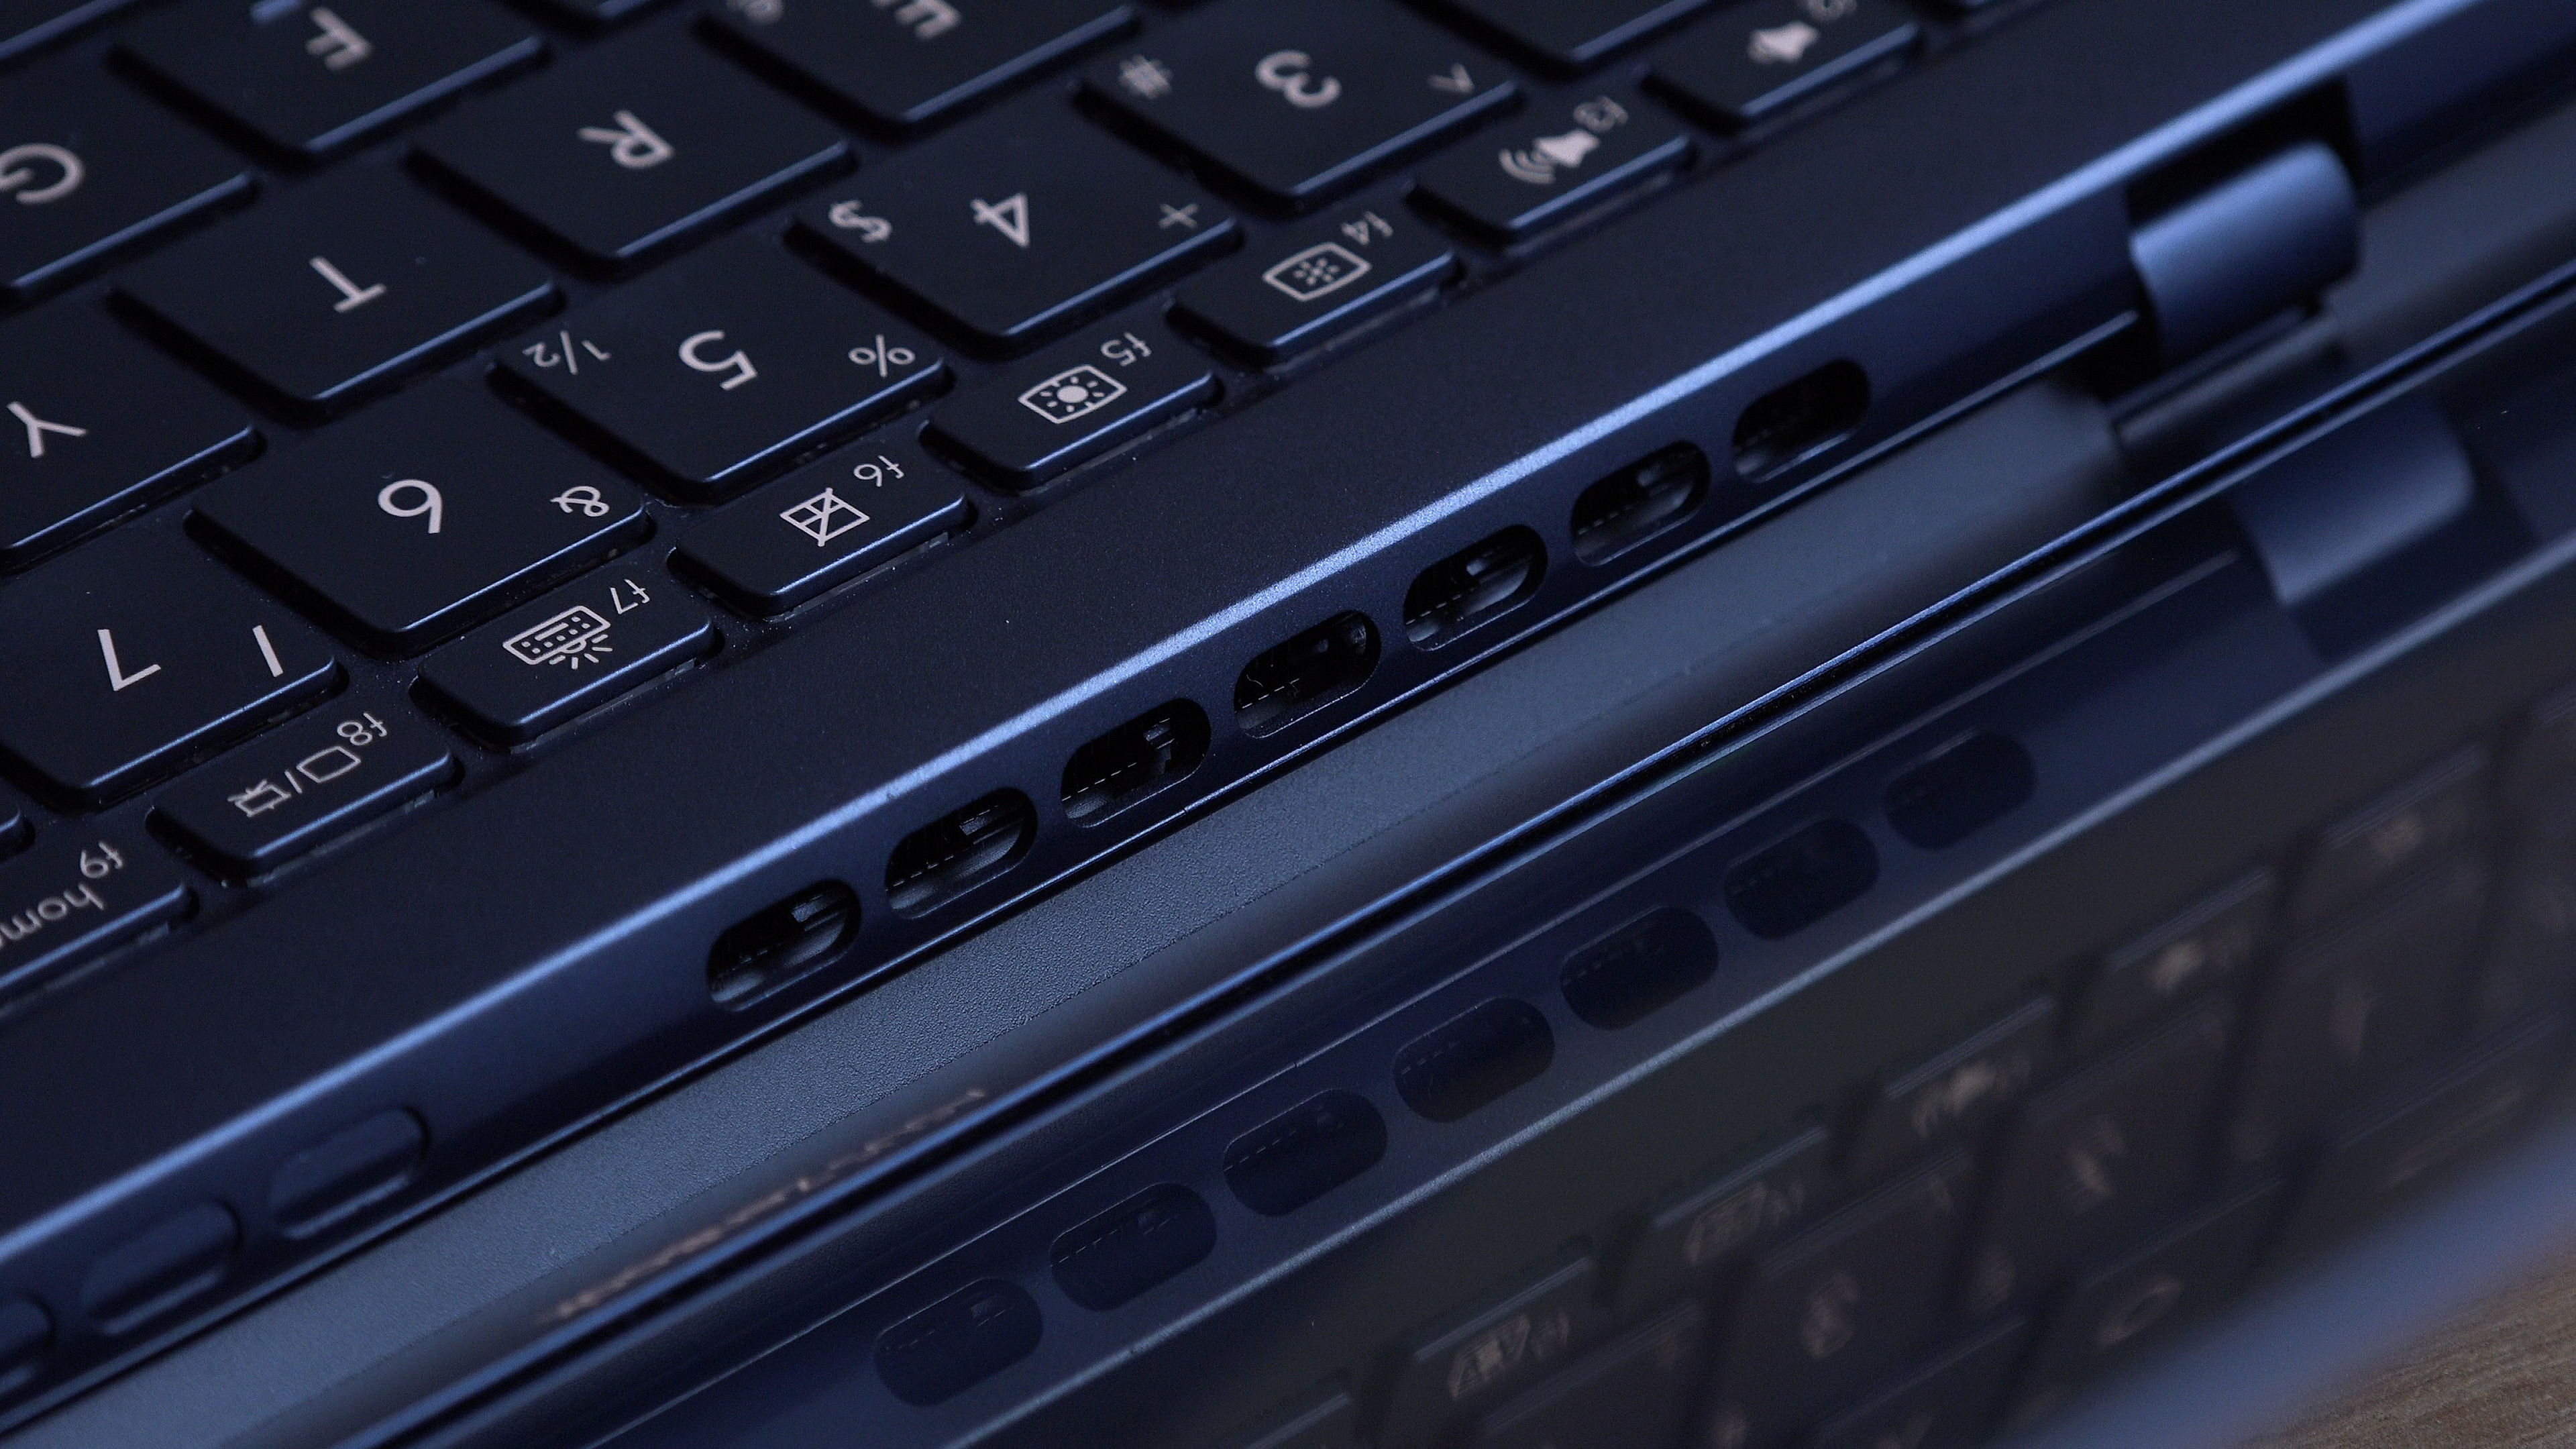 Macbook Pro'ya alternatif olabilir mi? 'Asus Zenbook S UX391U incelemesi'